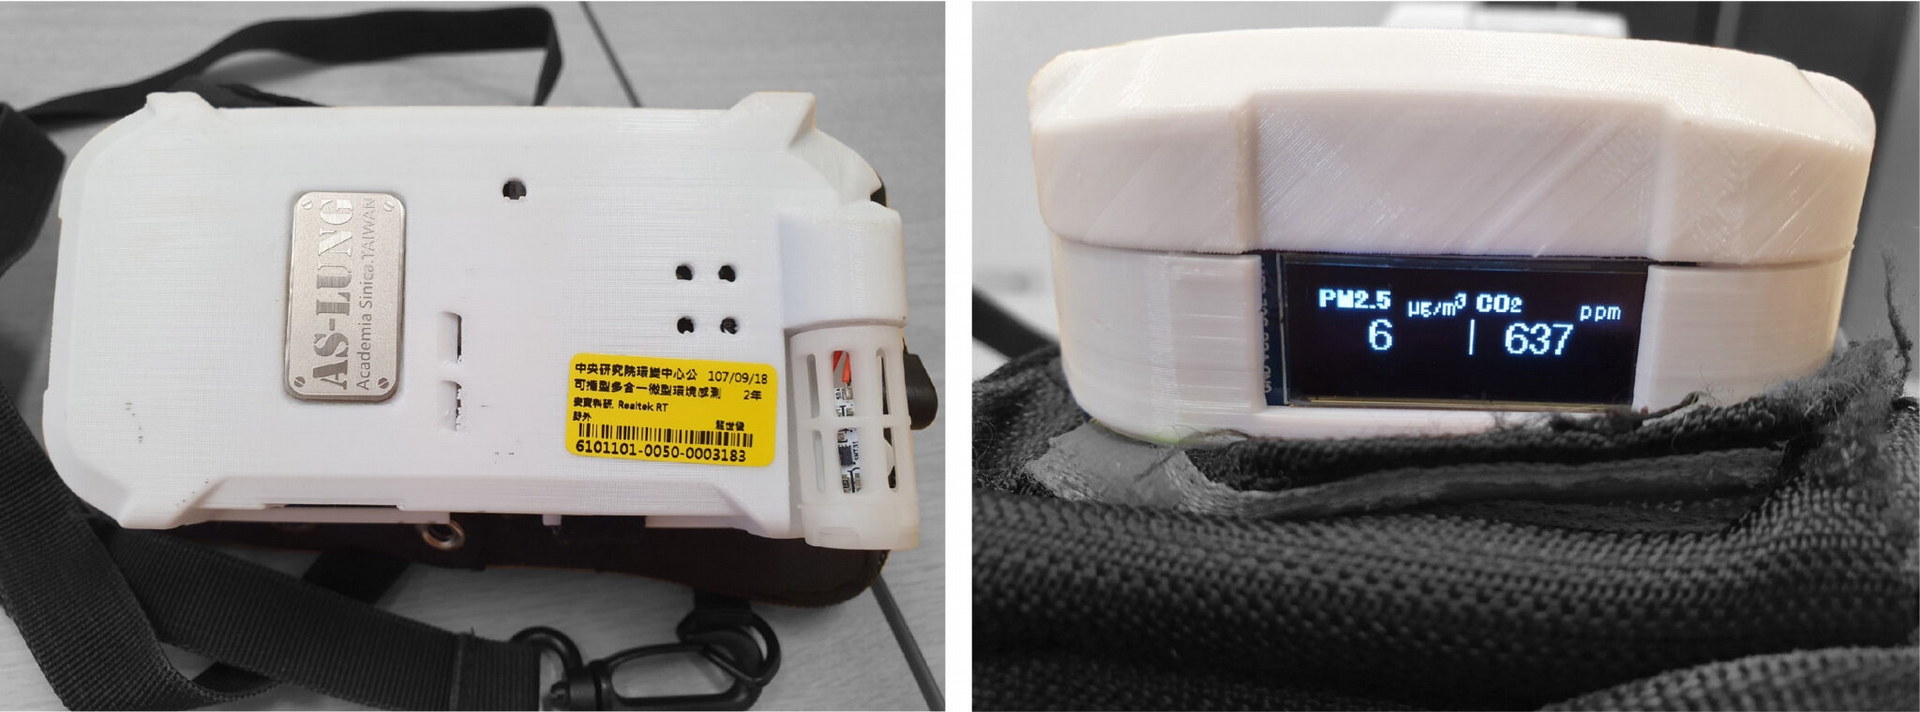 圖片為 AS-LUNG-P（隨身機），機器平面大小約一個口罩，可輕易配戴在身上，最底部顯示 PM2.5 和二氧化碳的精準量測數據。 圖│研之有物 